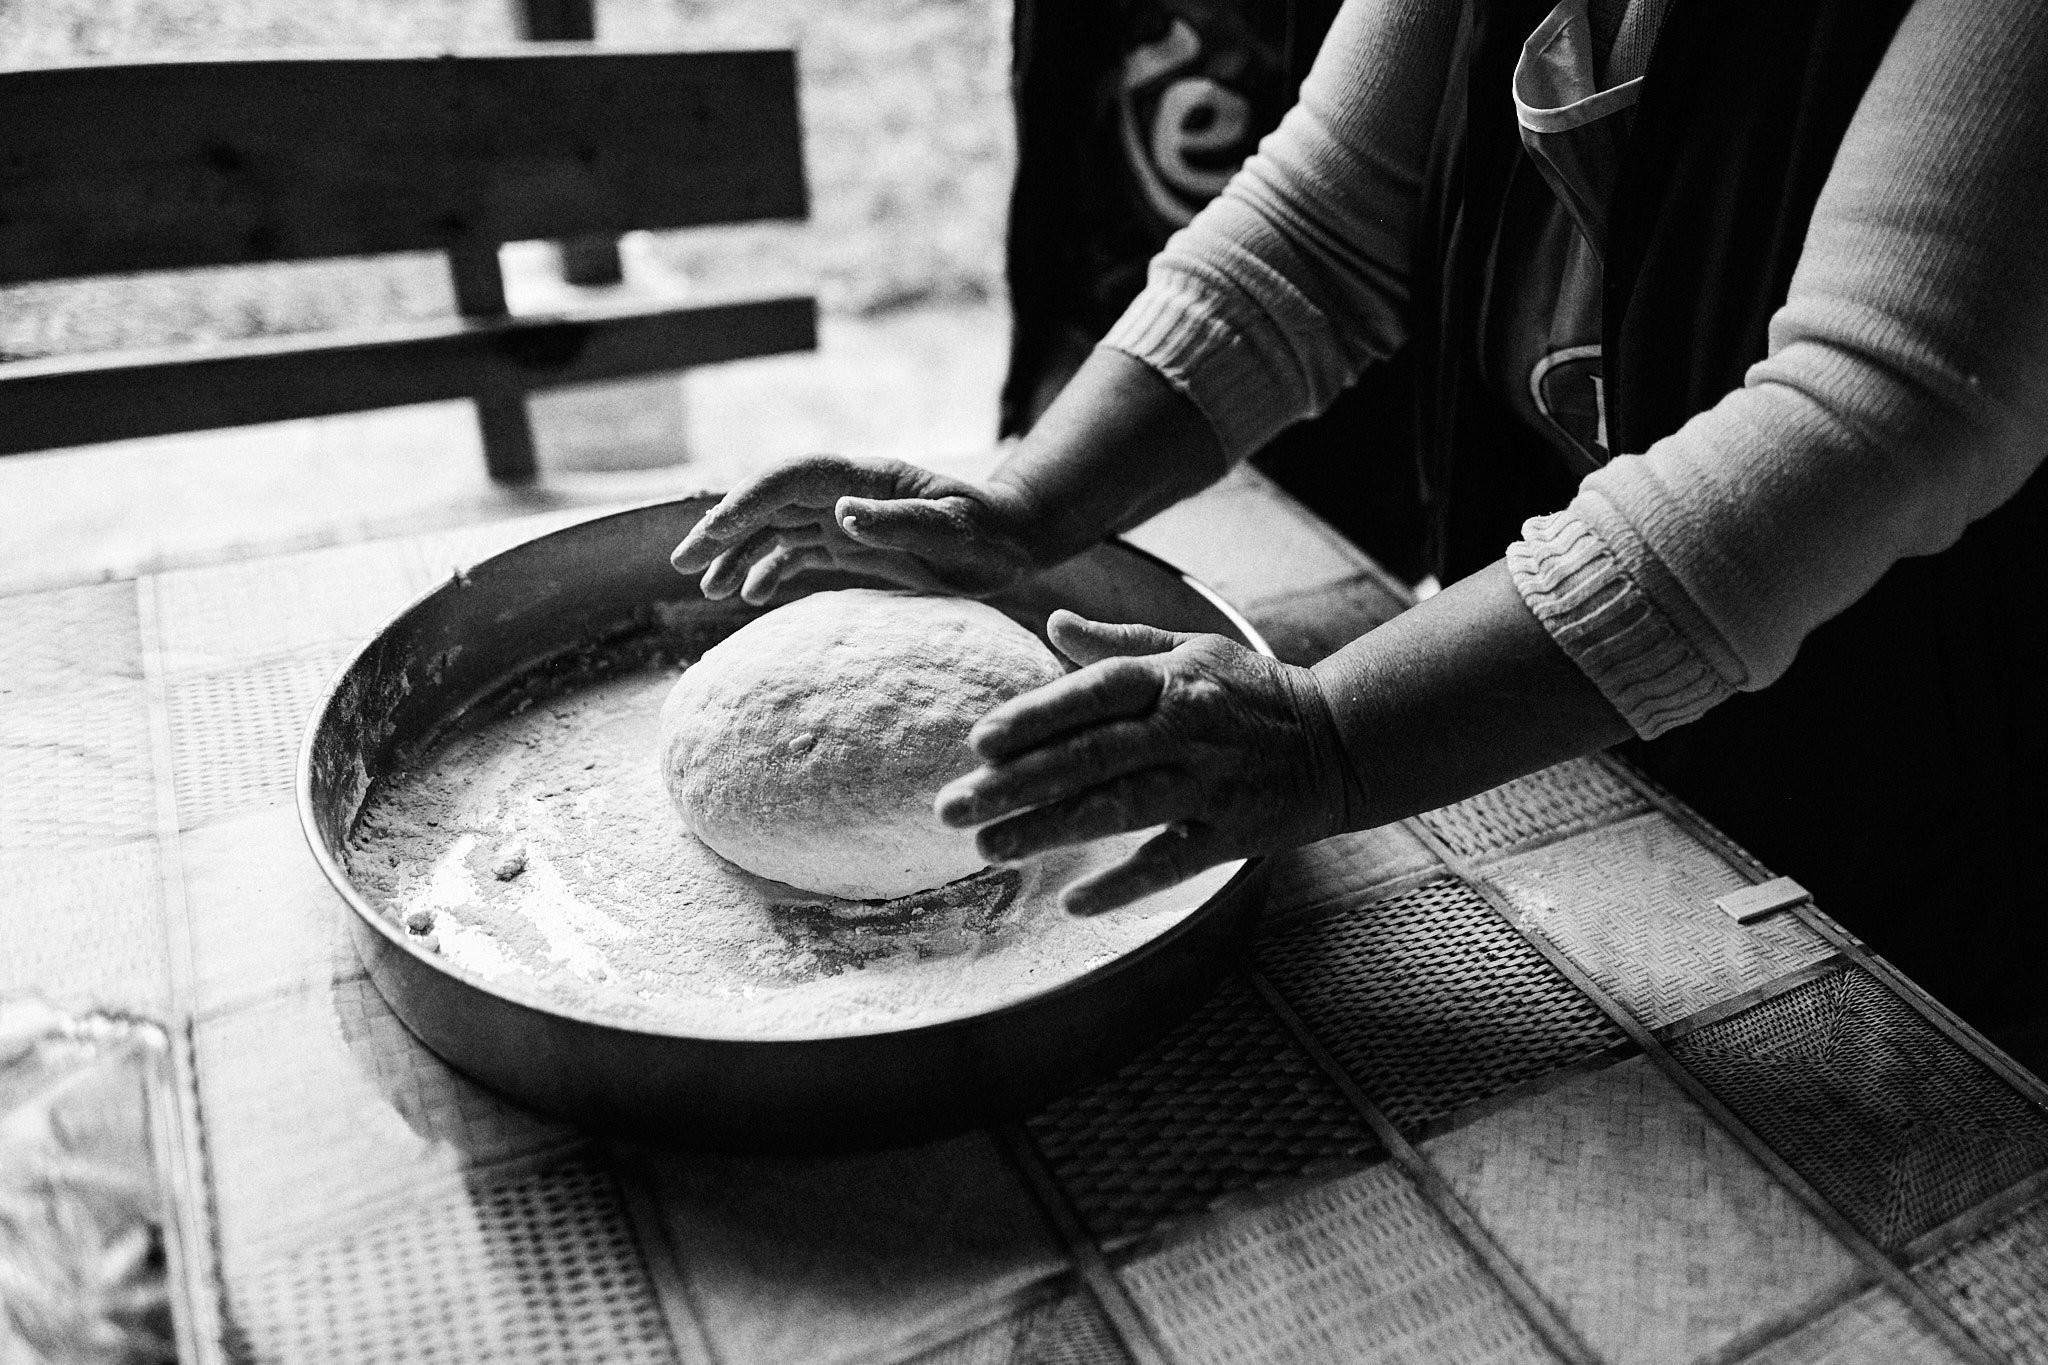 Bread preparation, Gorno Peshtene, Bulgaria 2021 © Asen Velichkov